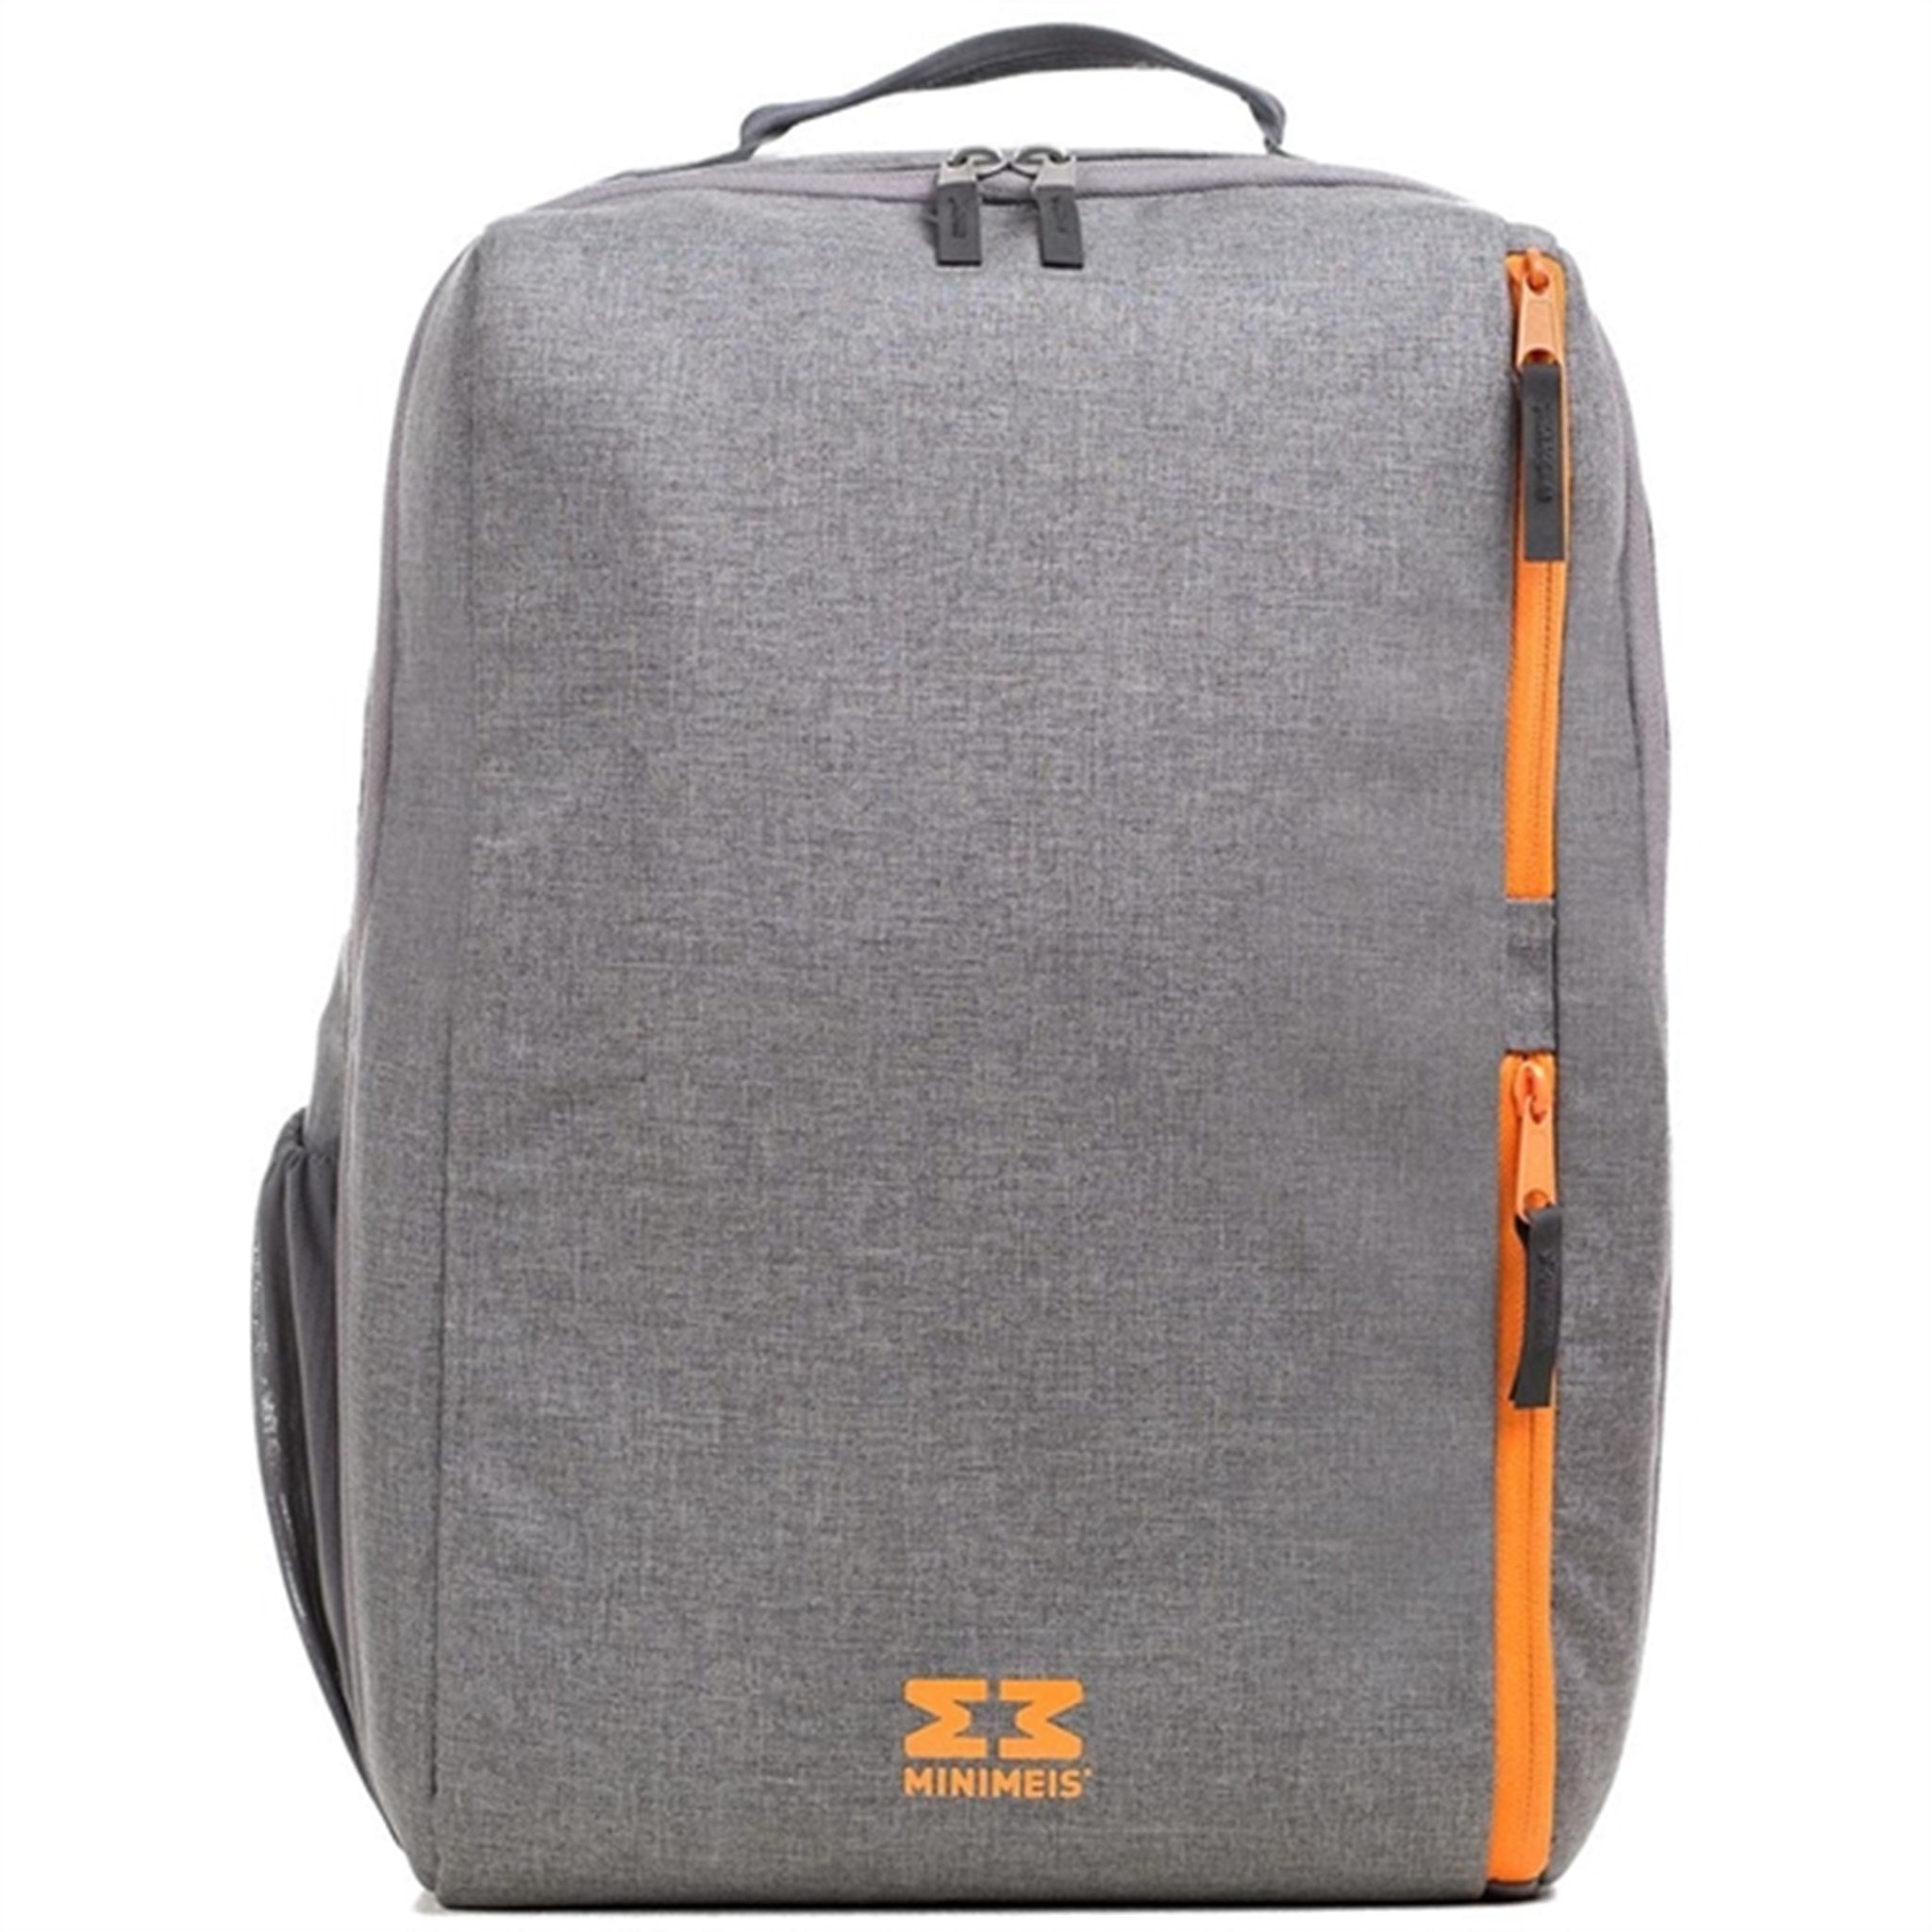 MiniMeis Backpack Grey Melange